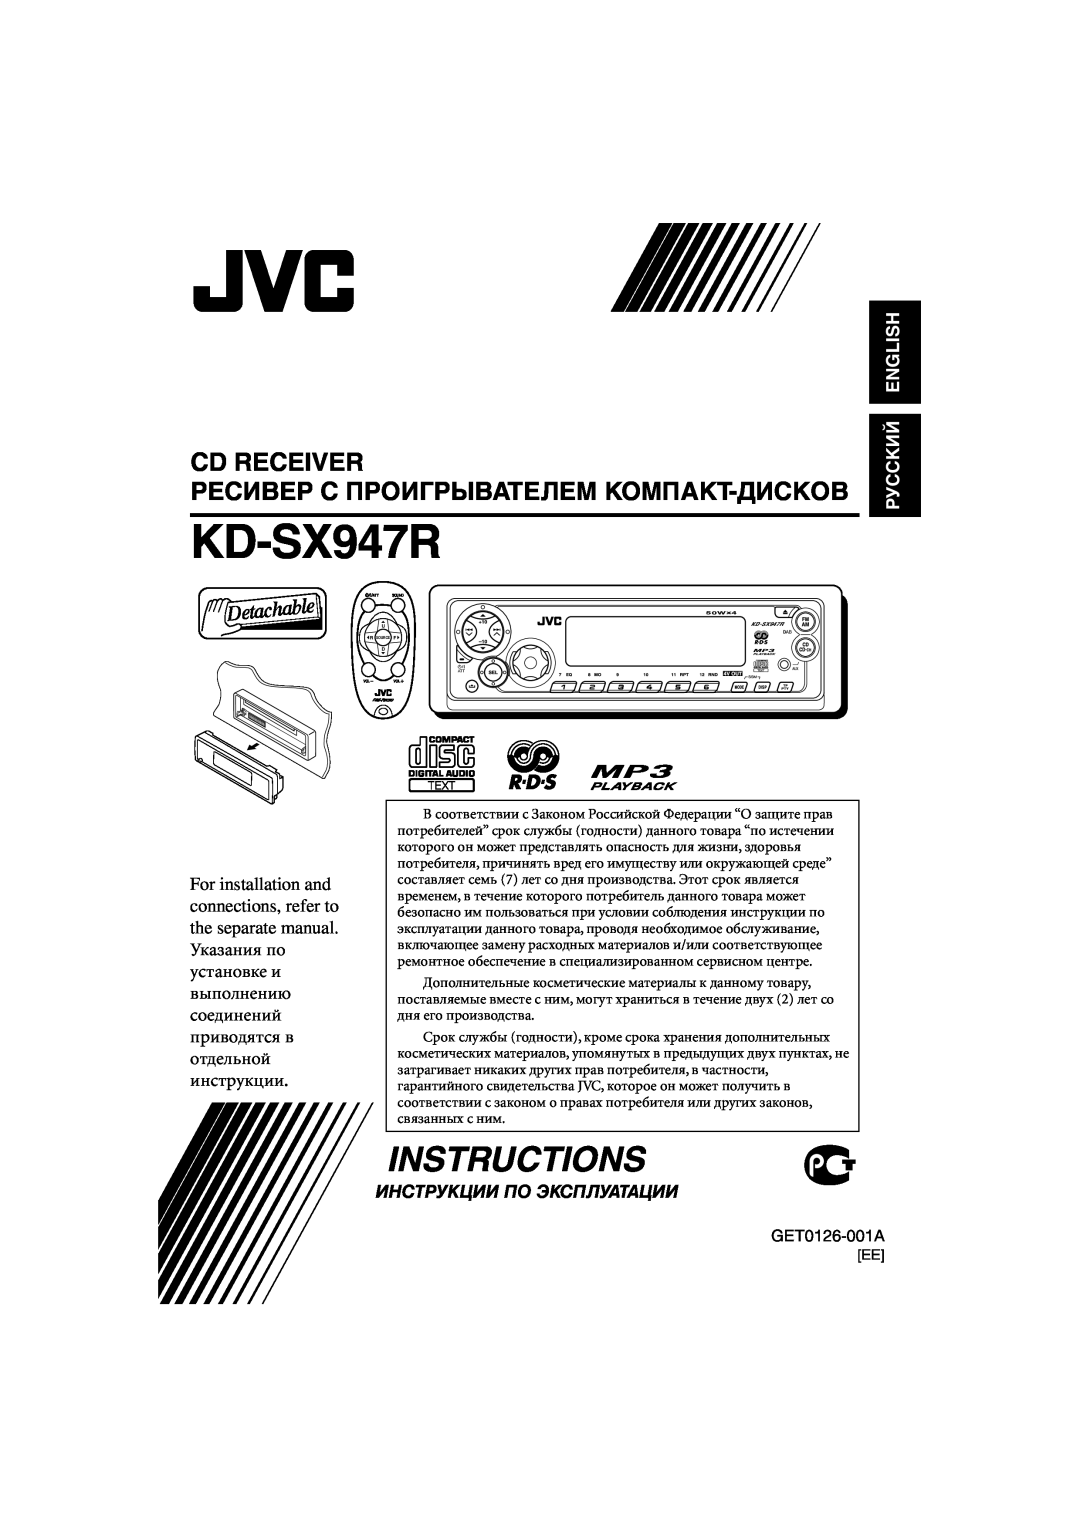 JVC GET0126-001A manual Cd Receiver, KD-SX947R, Instructions, Ресивер С Проигрыbateлem Komпakt-Диcкob, Руcckий English 